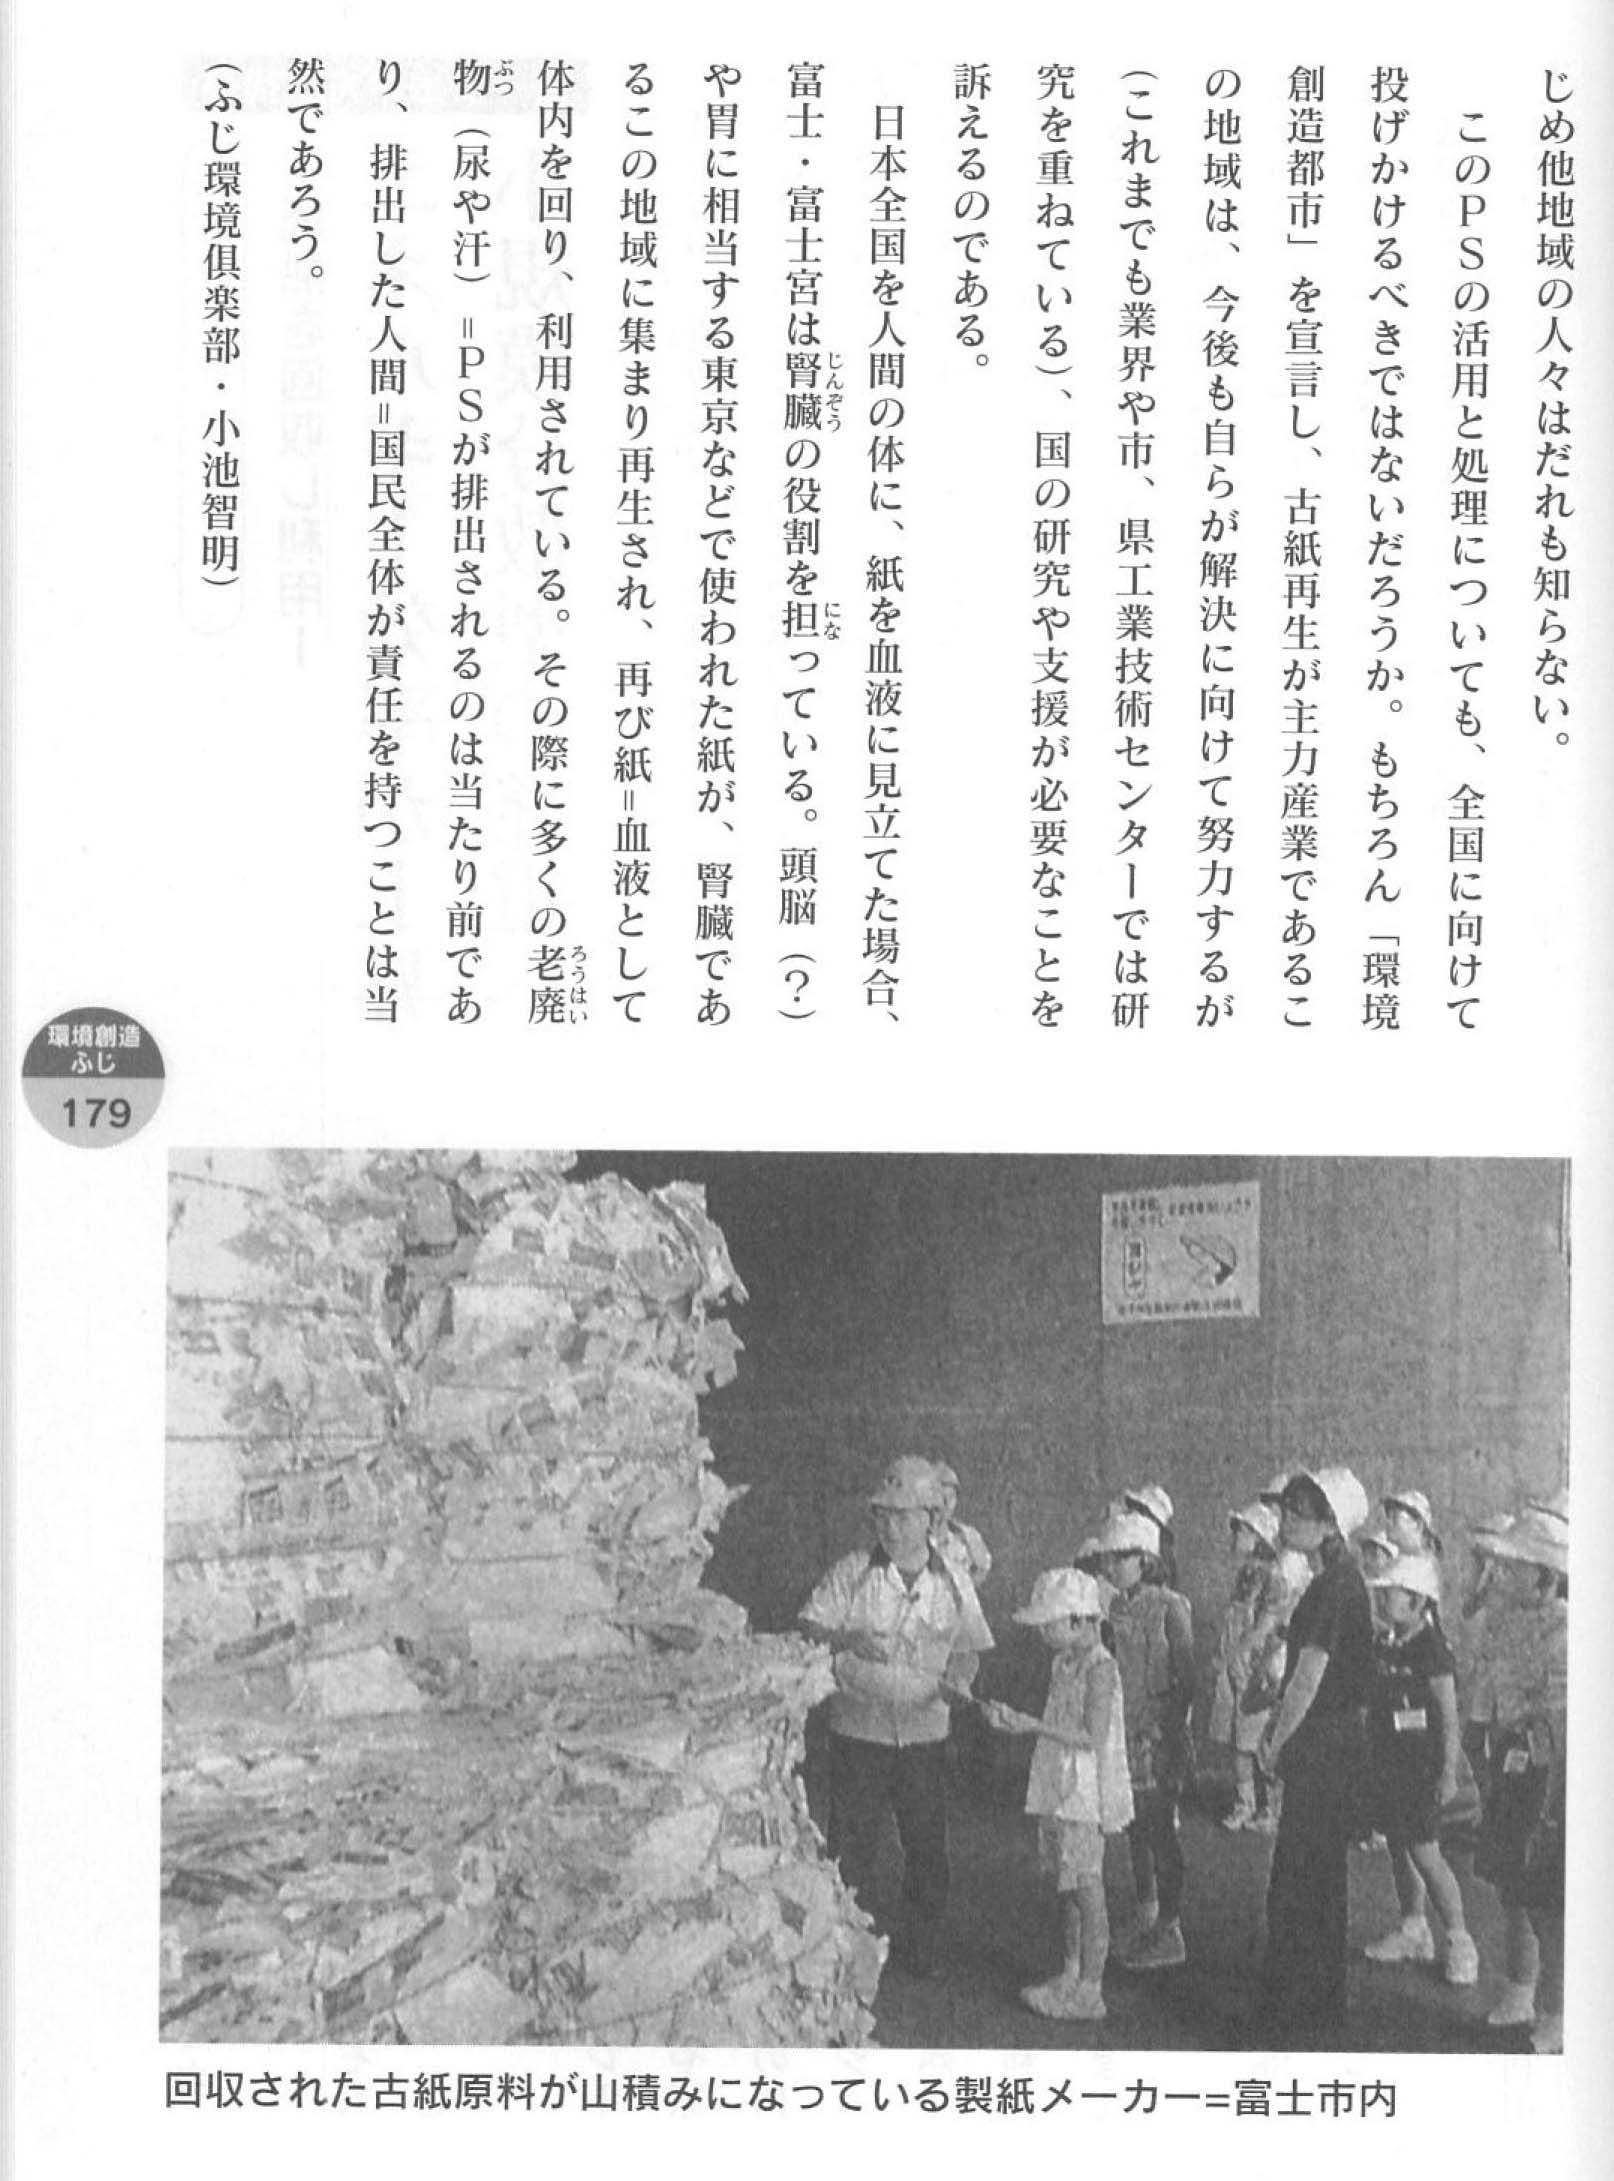 日本一「紙のまち富士市」を全国に発信するための署名活動_f0141310_7421147.jpg